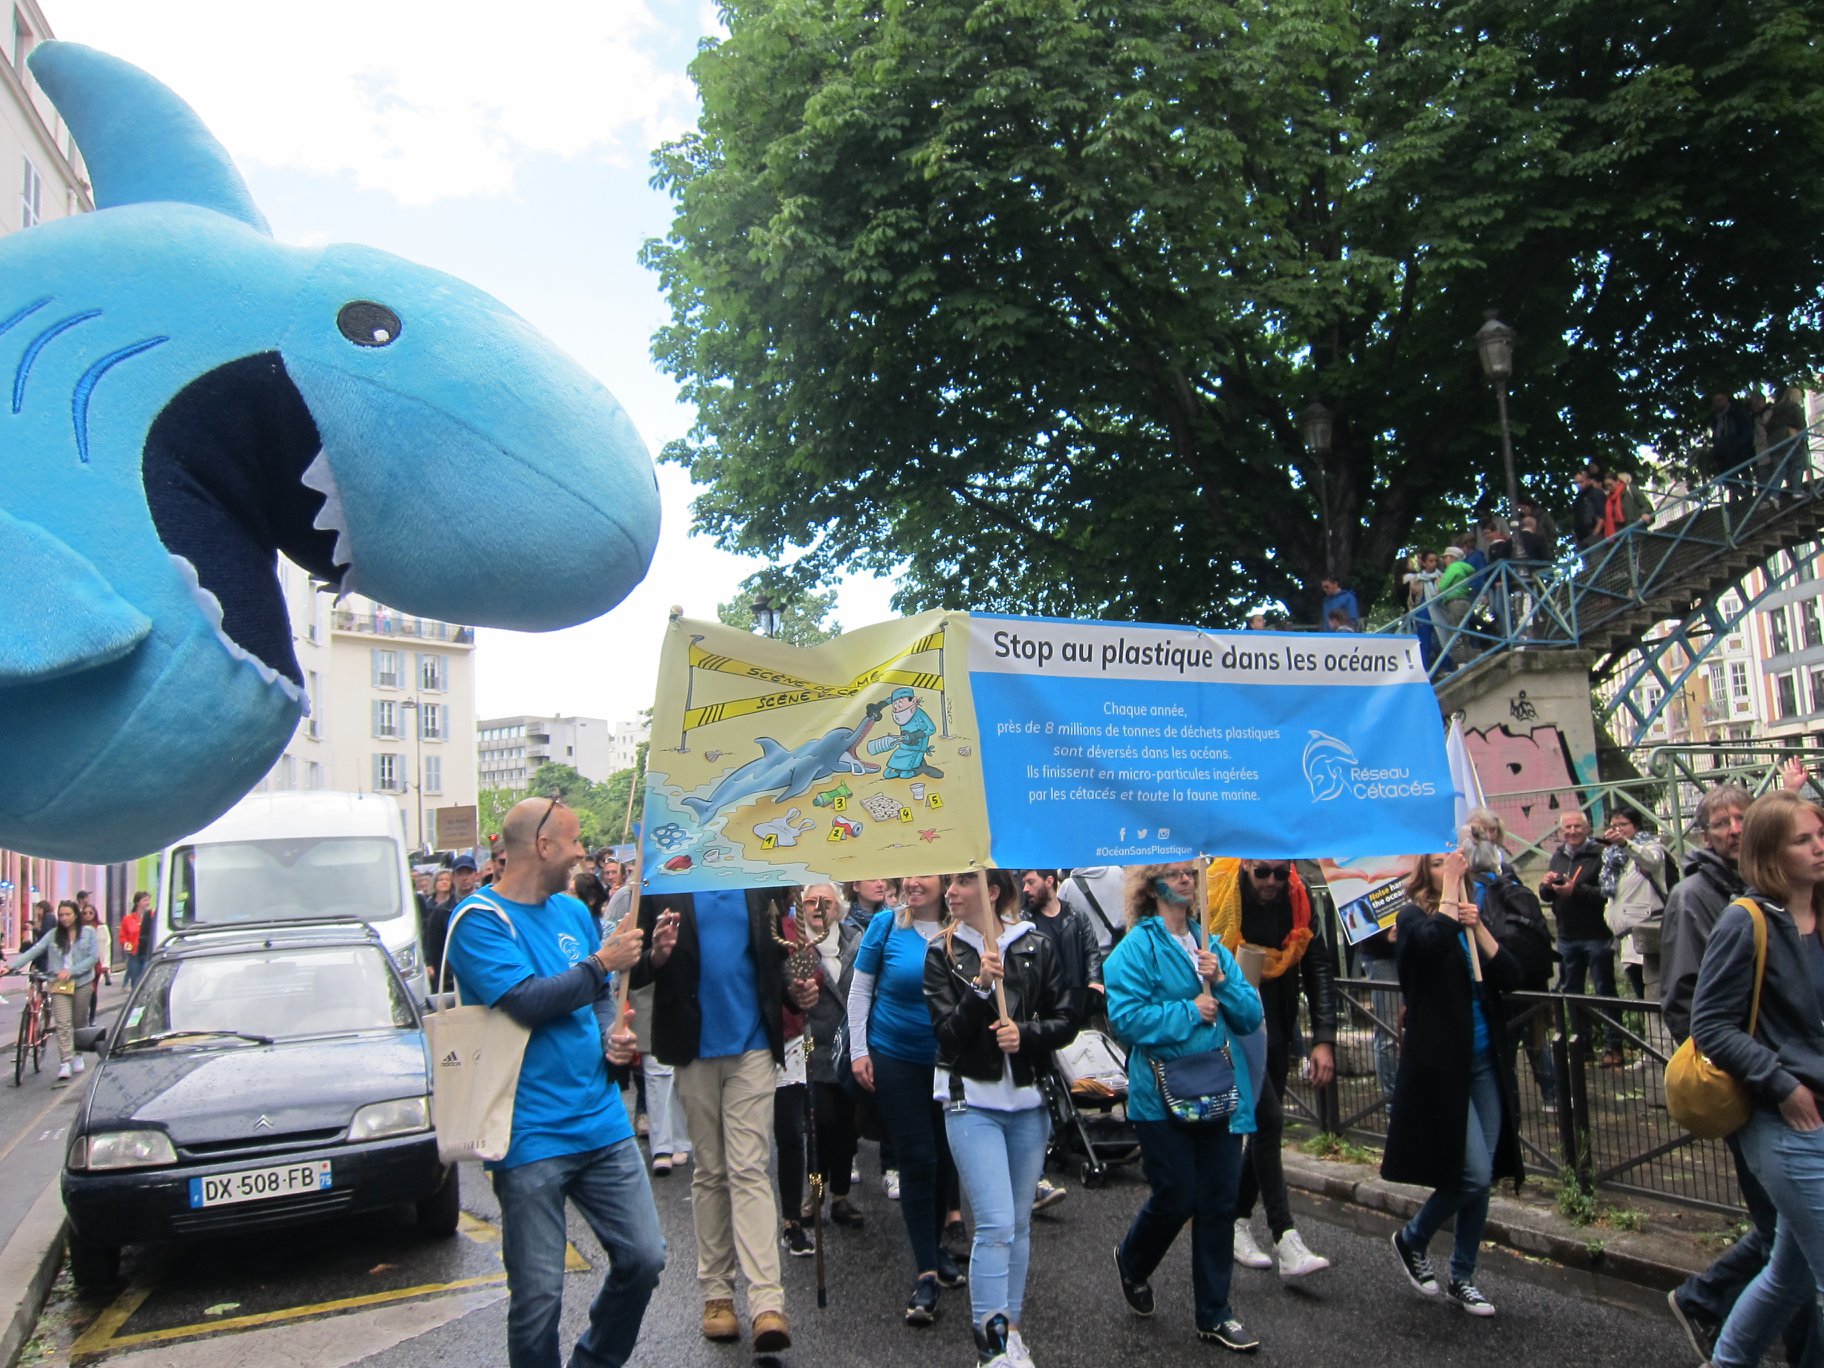 Marche pour l’océan à Paris, 8 juin 2019 : une marche revendicative mais festive